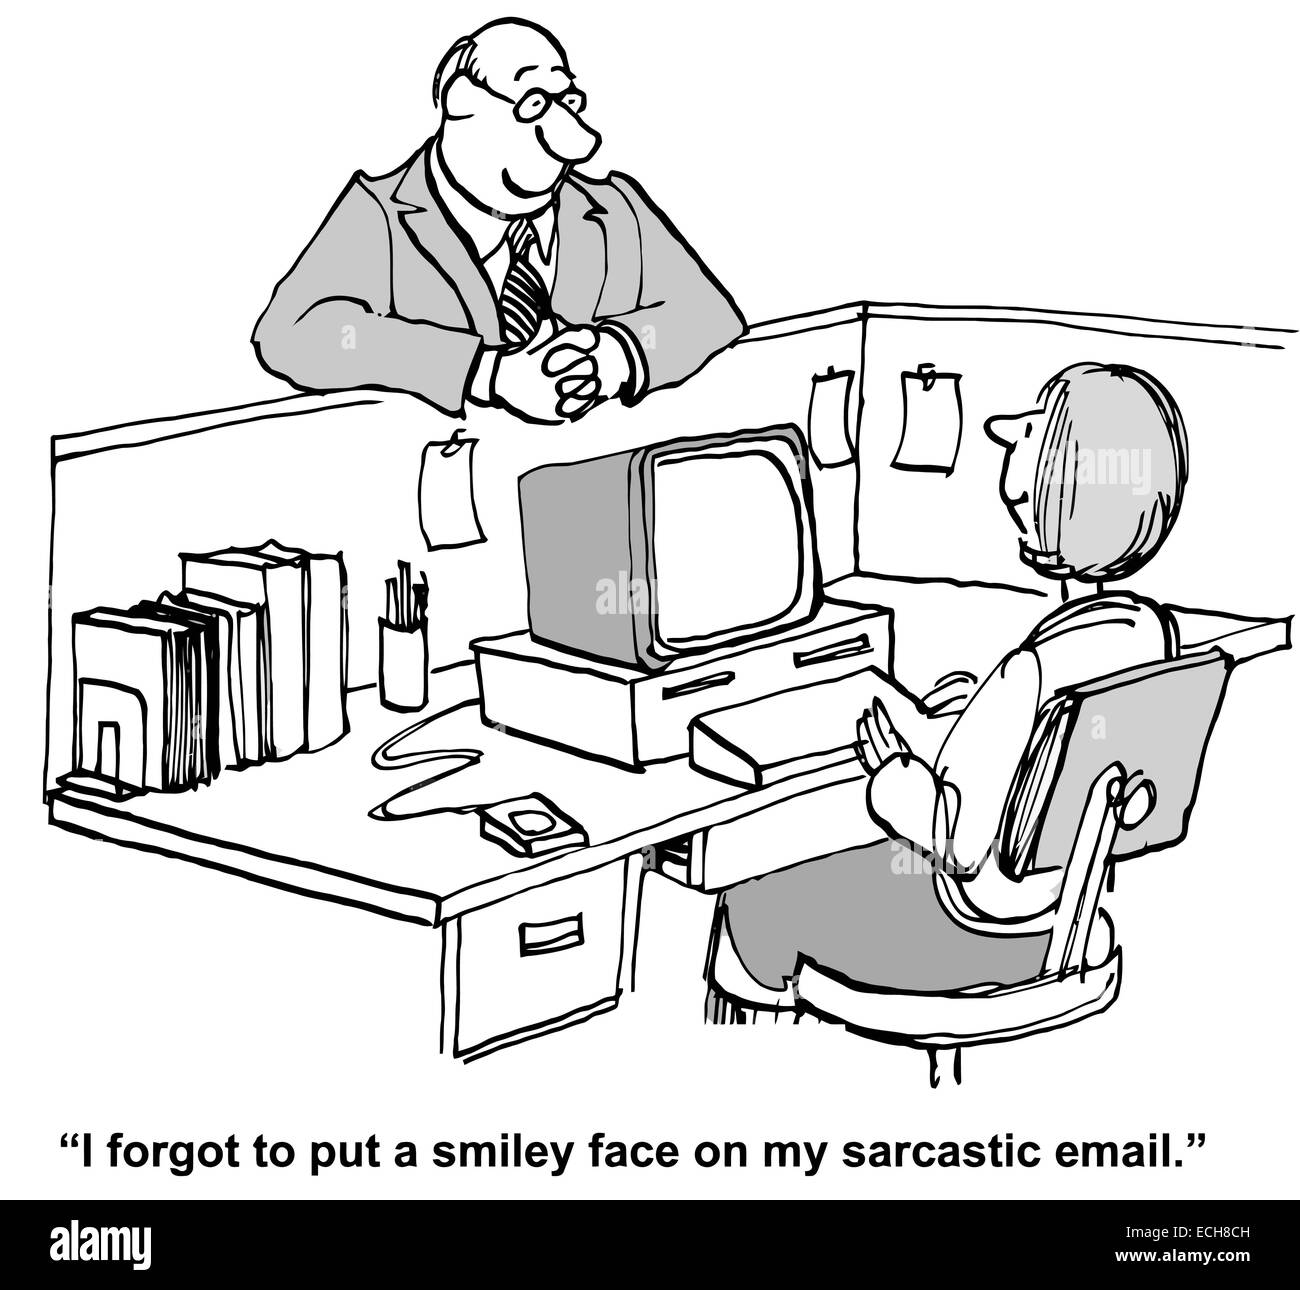 Un collega sta raccontando peer che ha dimenticato di mettere un emoticon, Smiley face, sul suo ghigno email. Illustrazione Vettoriale